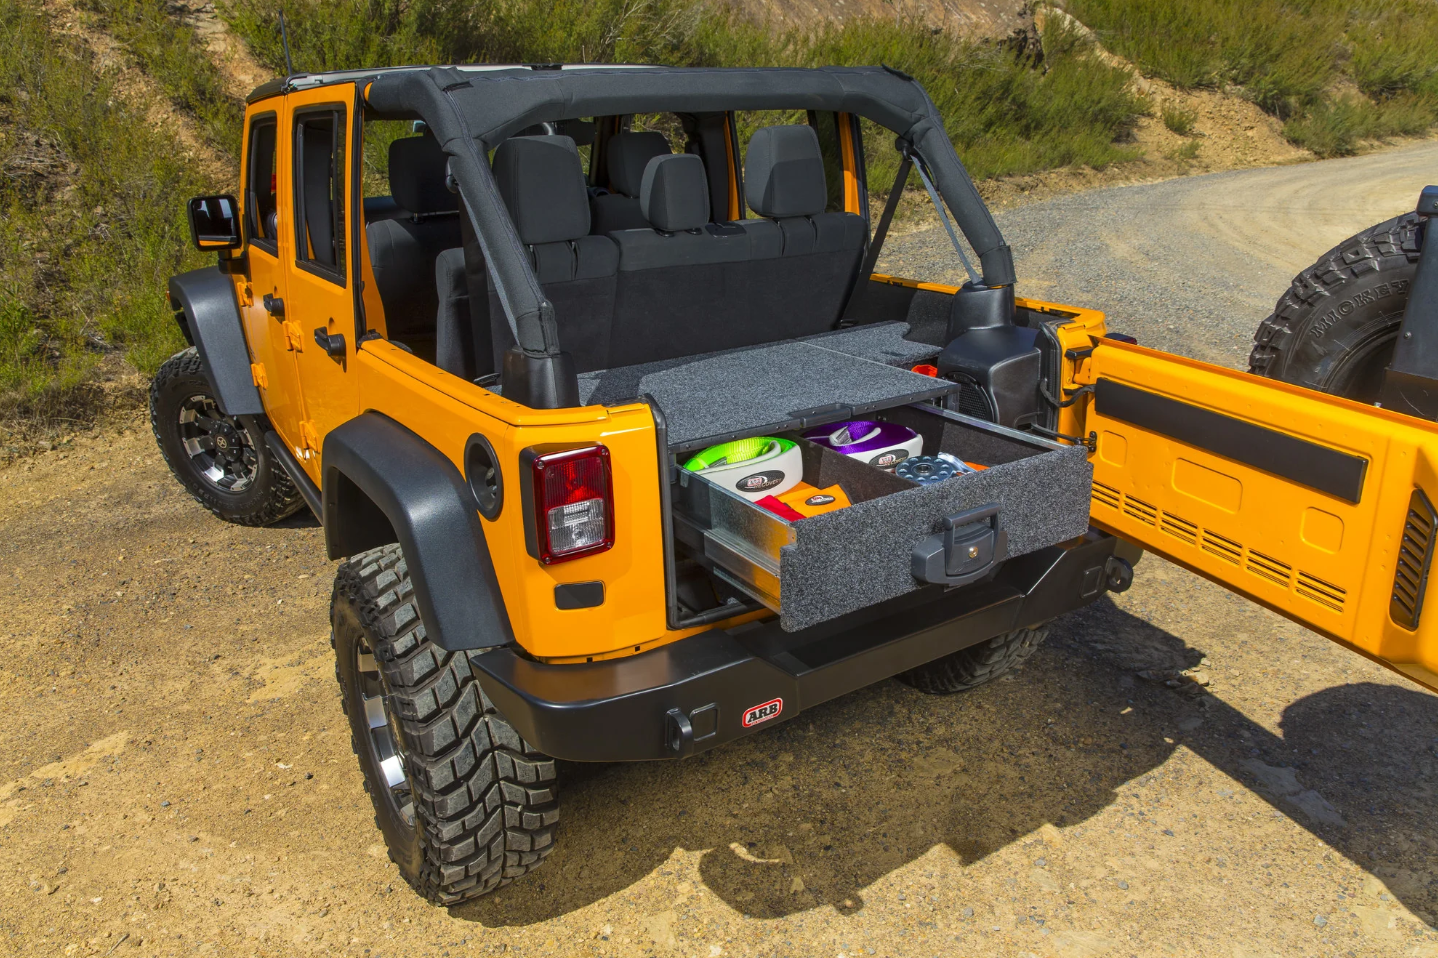 jeep wrangler amarillo open top con cajon trasero abierto arb en el maletero